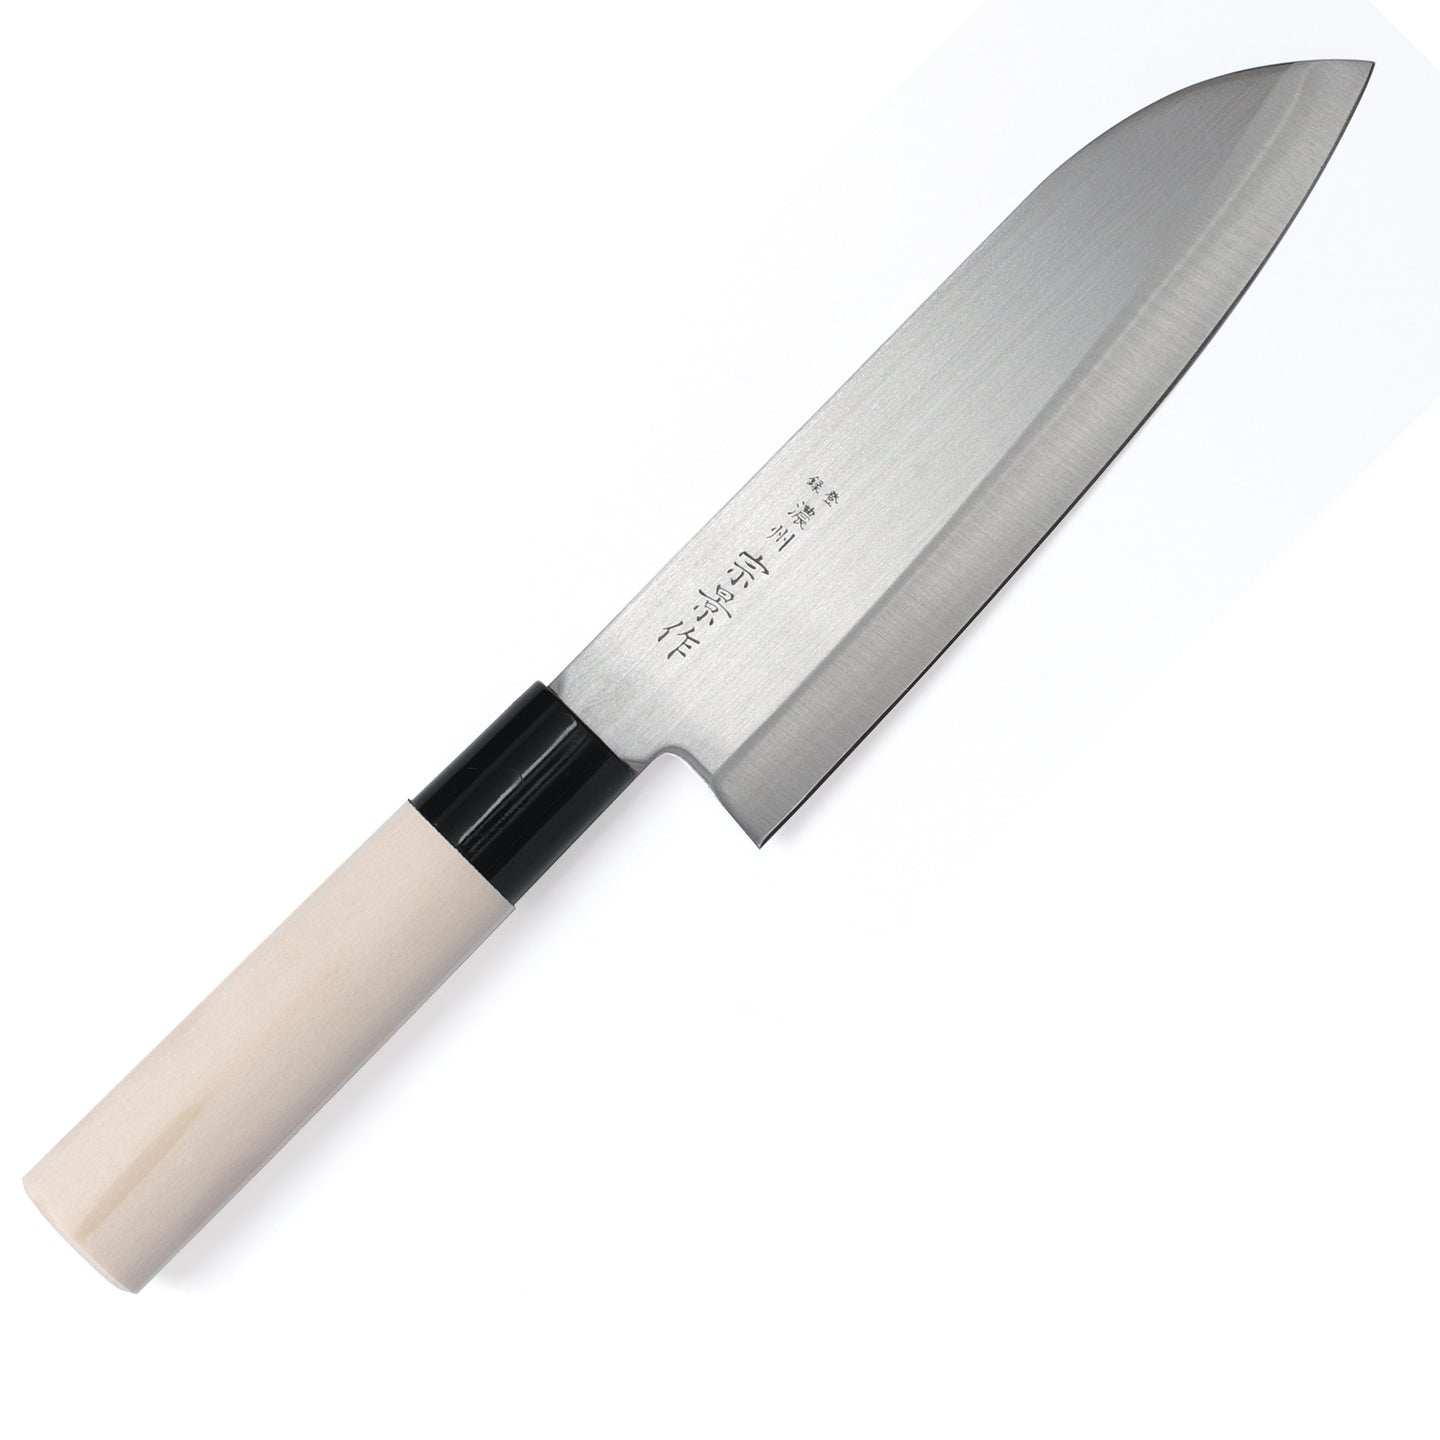 Couteaux Haiku Home - Couteau Santoku 17,5 cm - L'essentiel